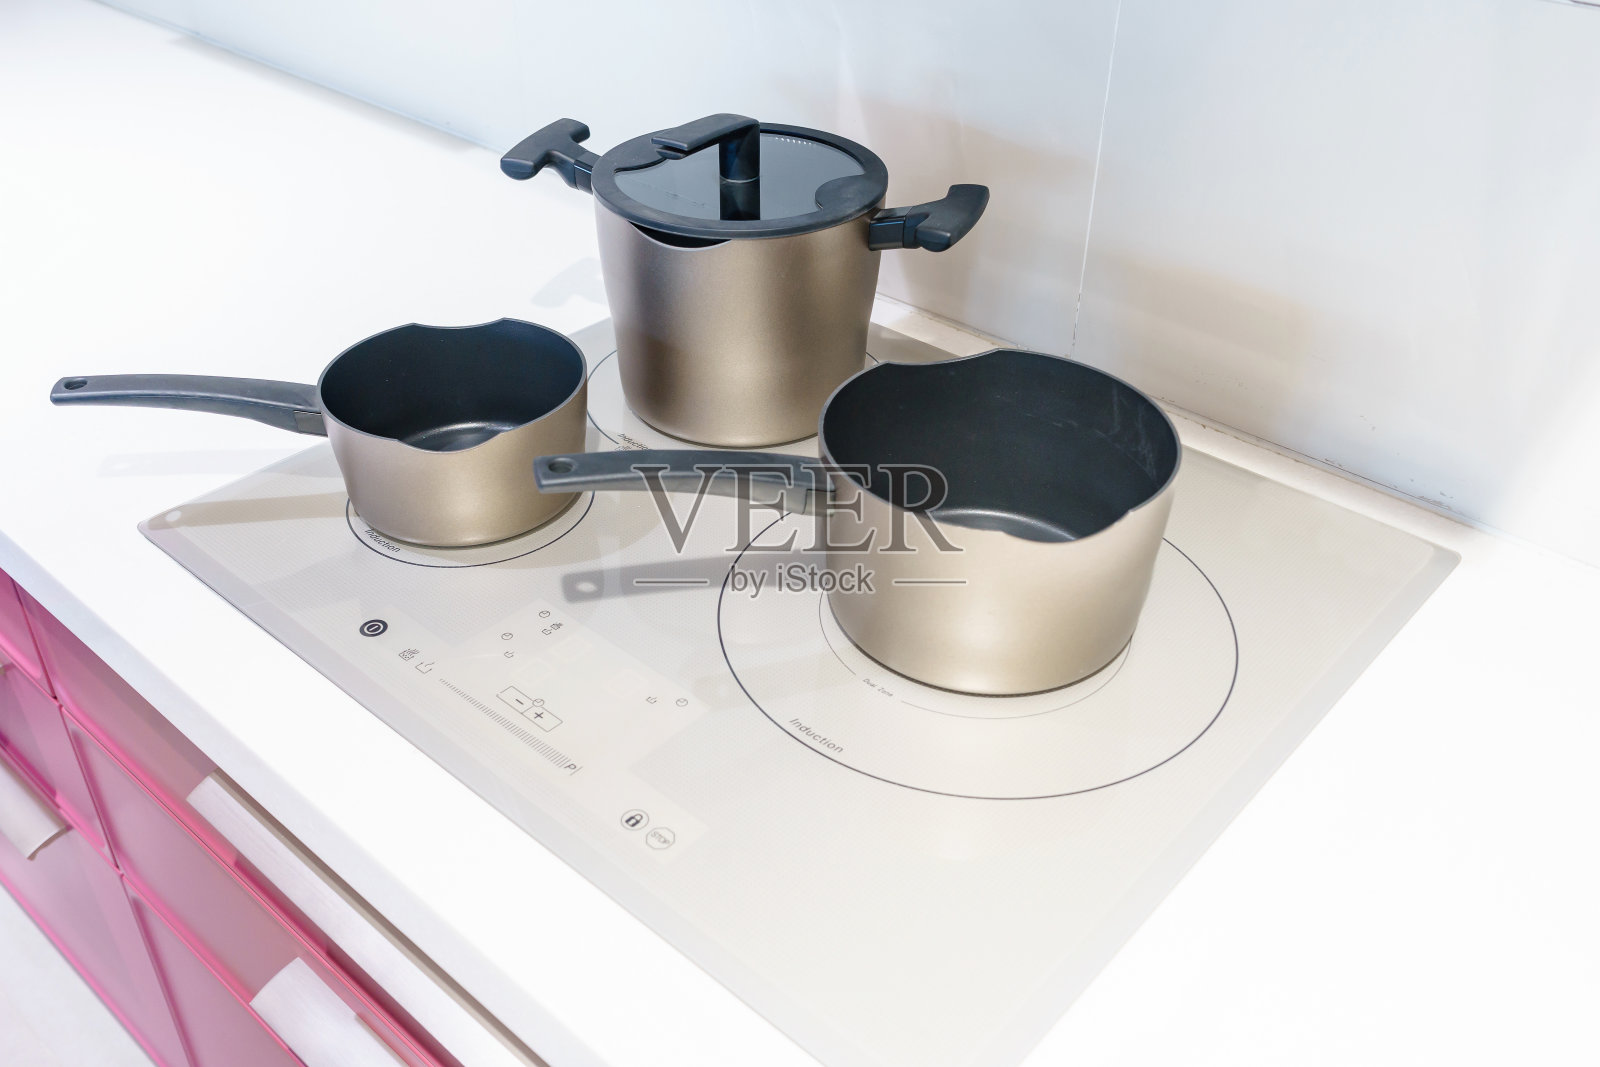 现代厨房电磁炉上的金属锅。现代厨房锅式电磁炉炊具概念照片摄影图片